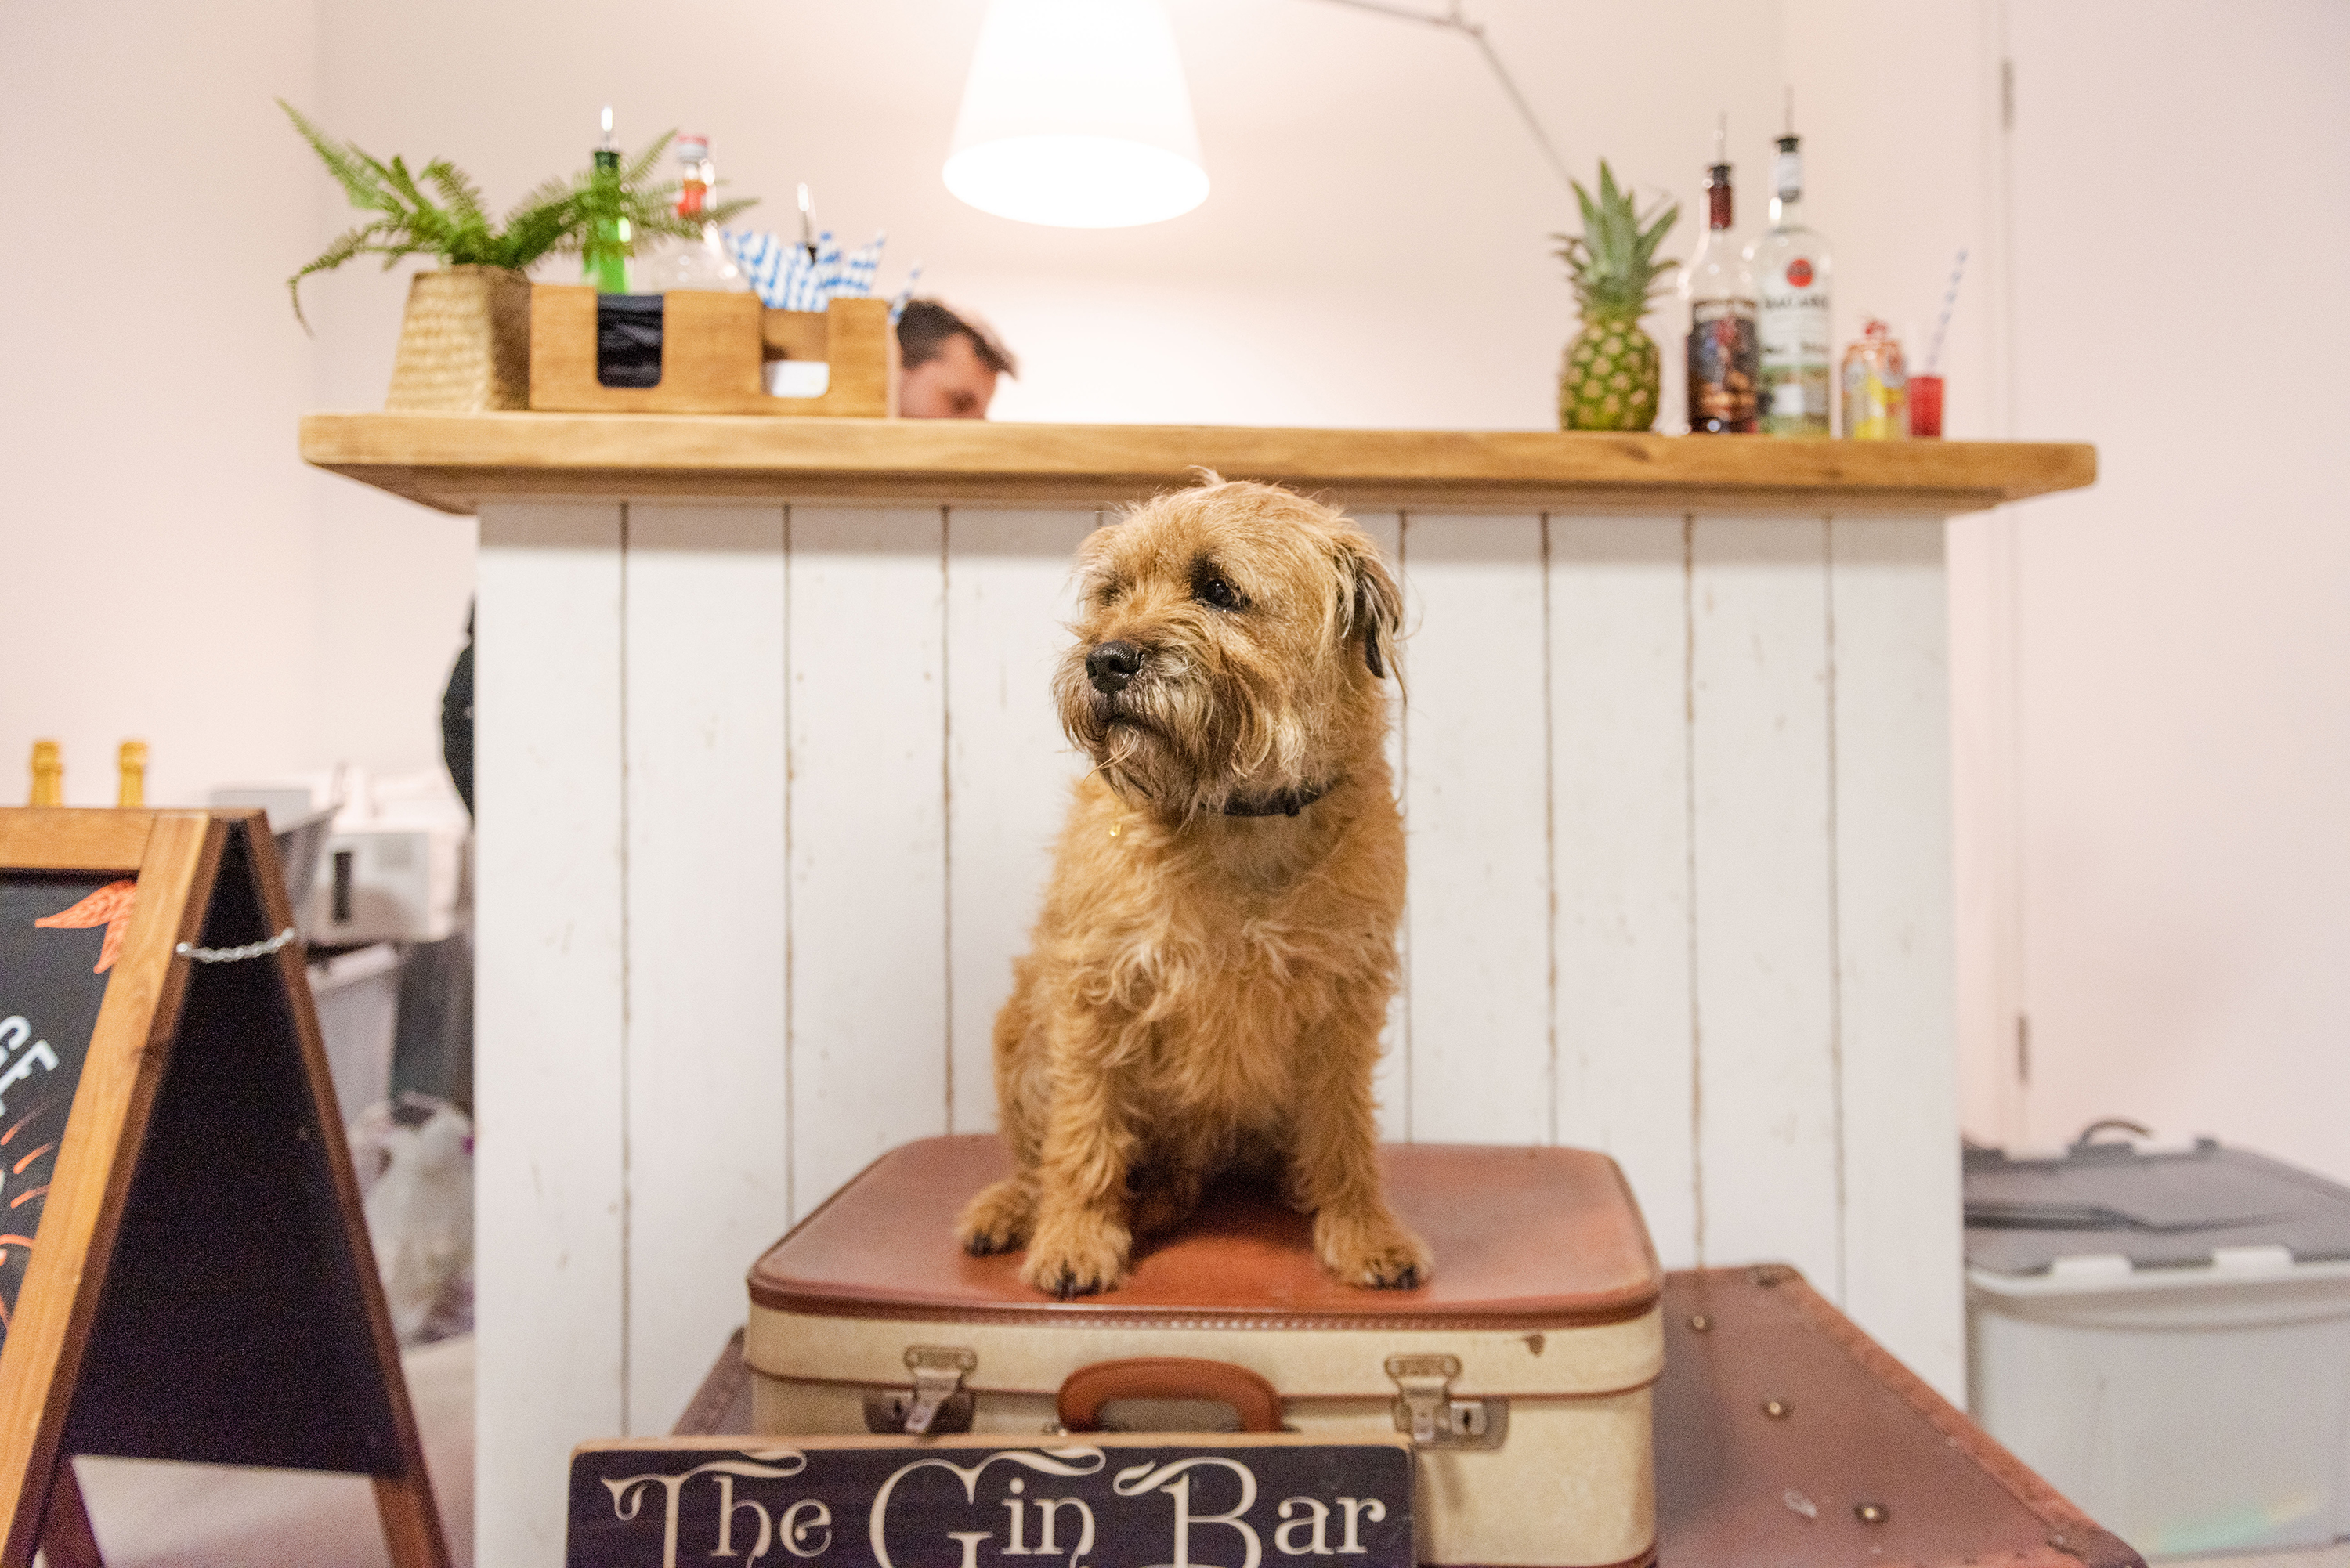 Rusty the dog enjoys the bar